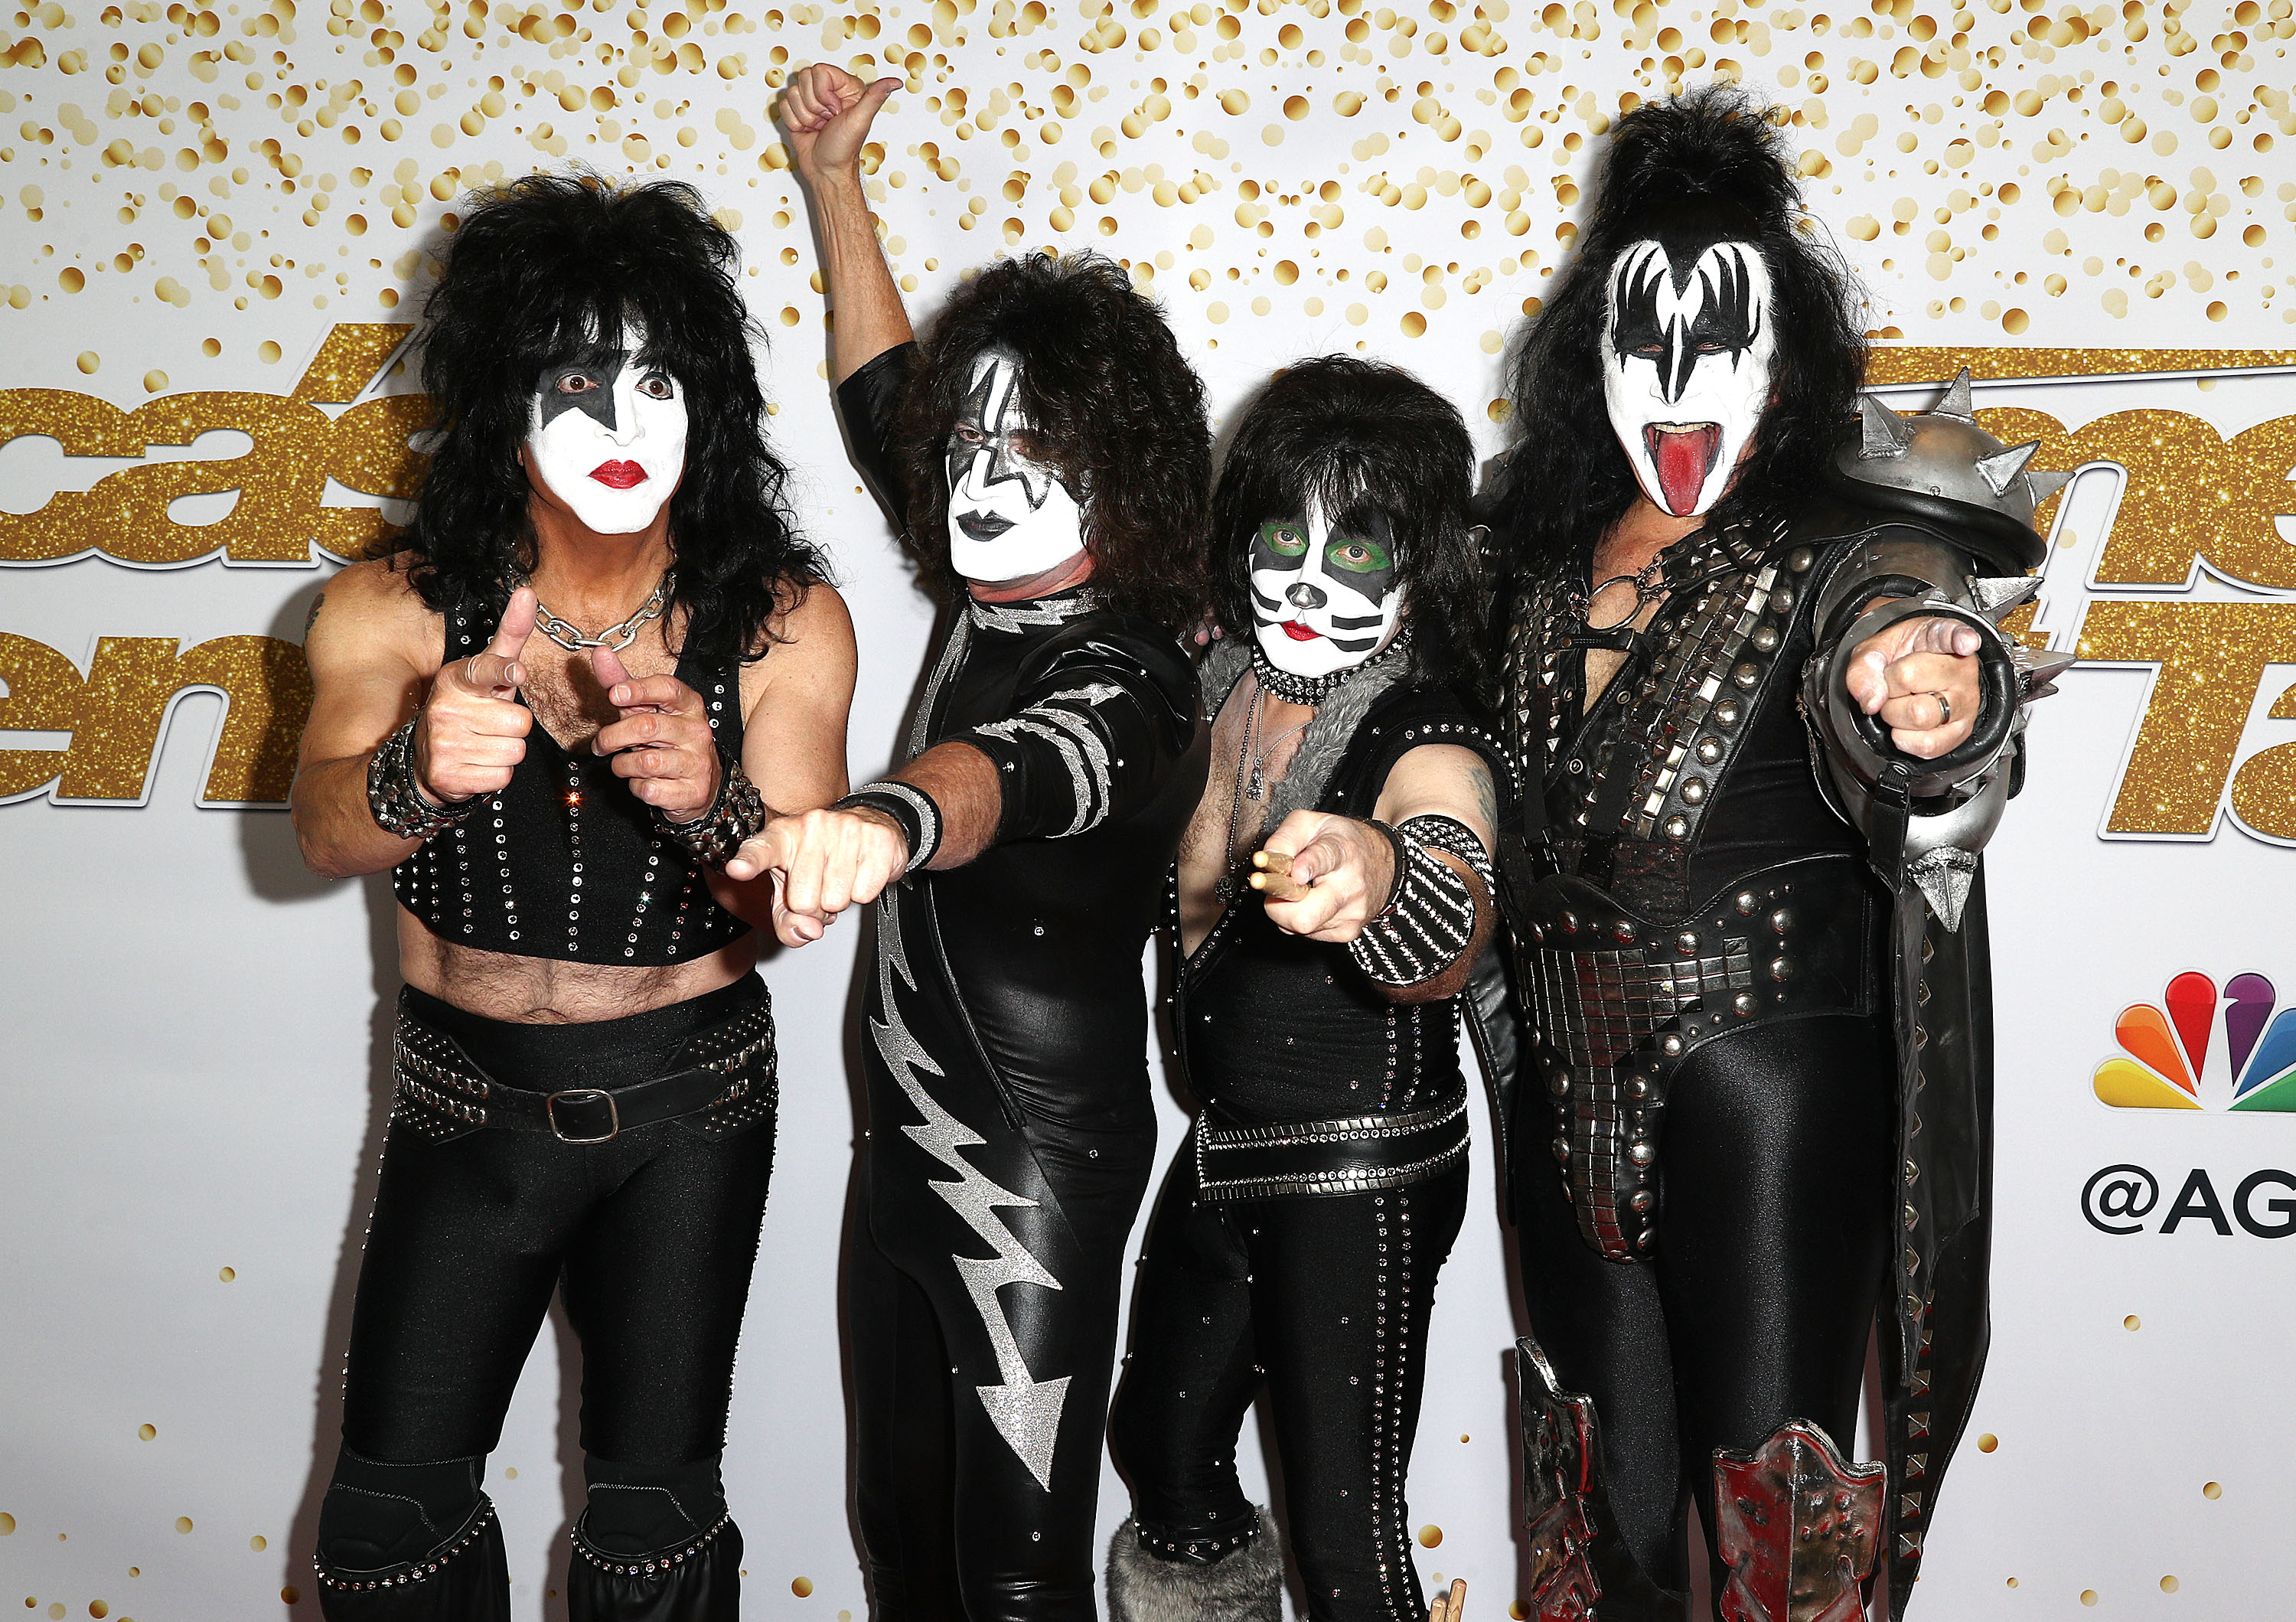 А една от най-обичаните рок групи пък носи буквално името "целувка" (Kiss, англ.пр)